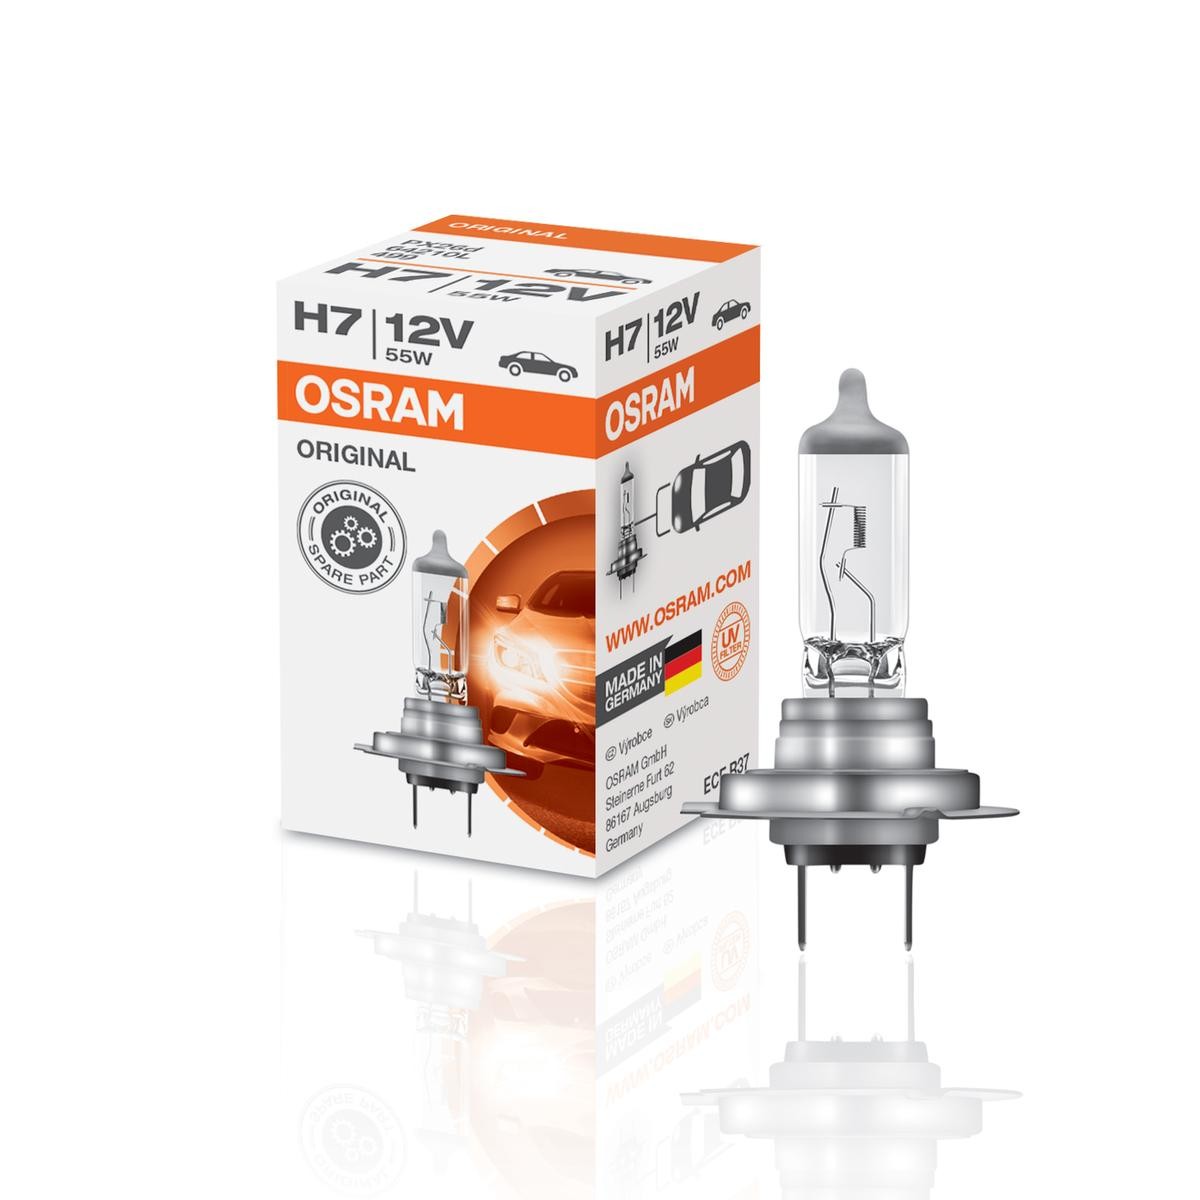 OSRAM ORIGINAL Bulb, spotlight H7 12V 55W PX26d 3200K Halogen 64210 HONDA